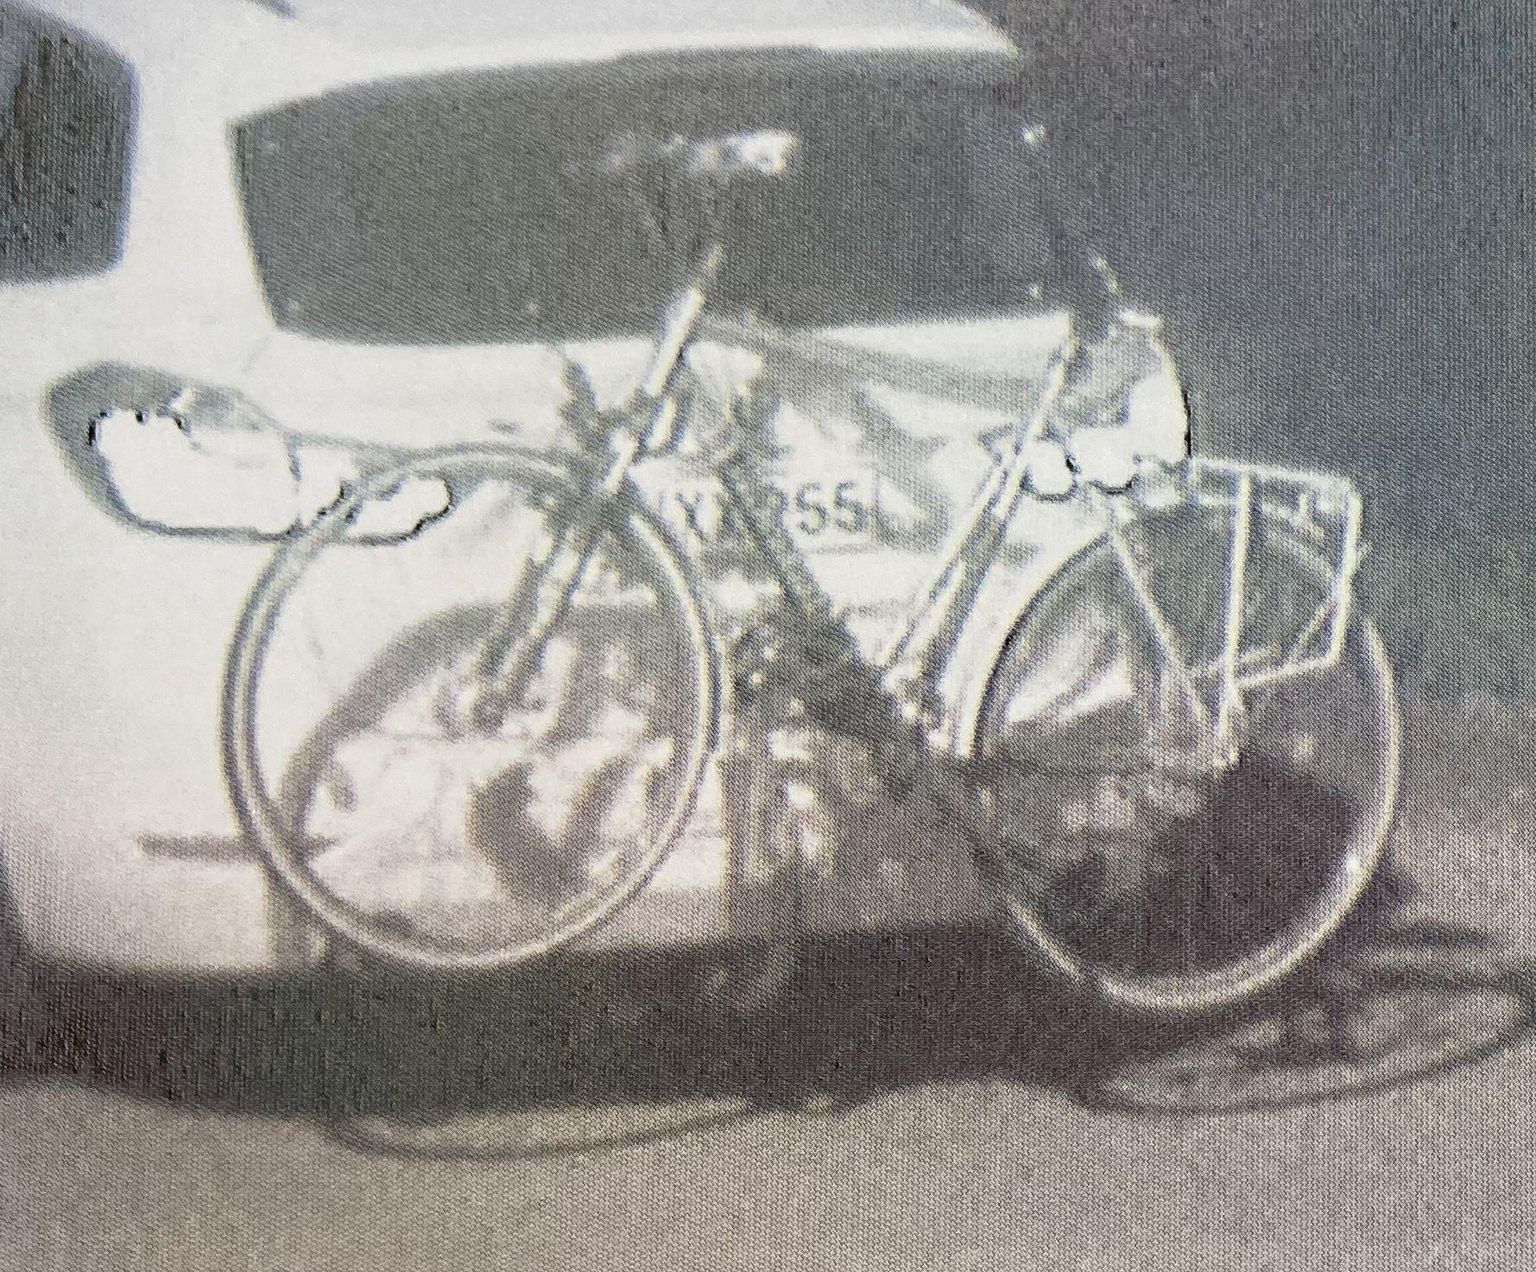 Прикрепленный к багажнику BMW велосипед давал возможность заявлять, что люк багажника так просто не открыть